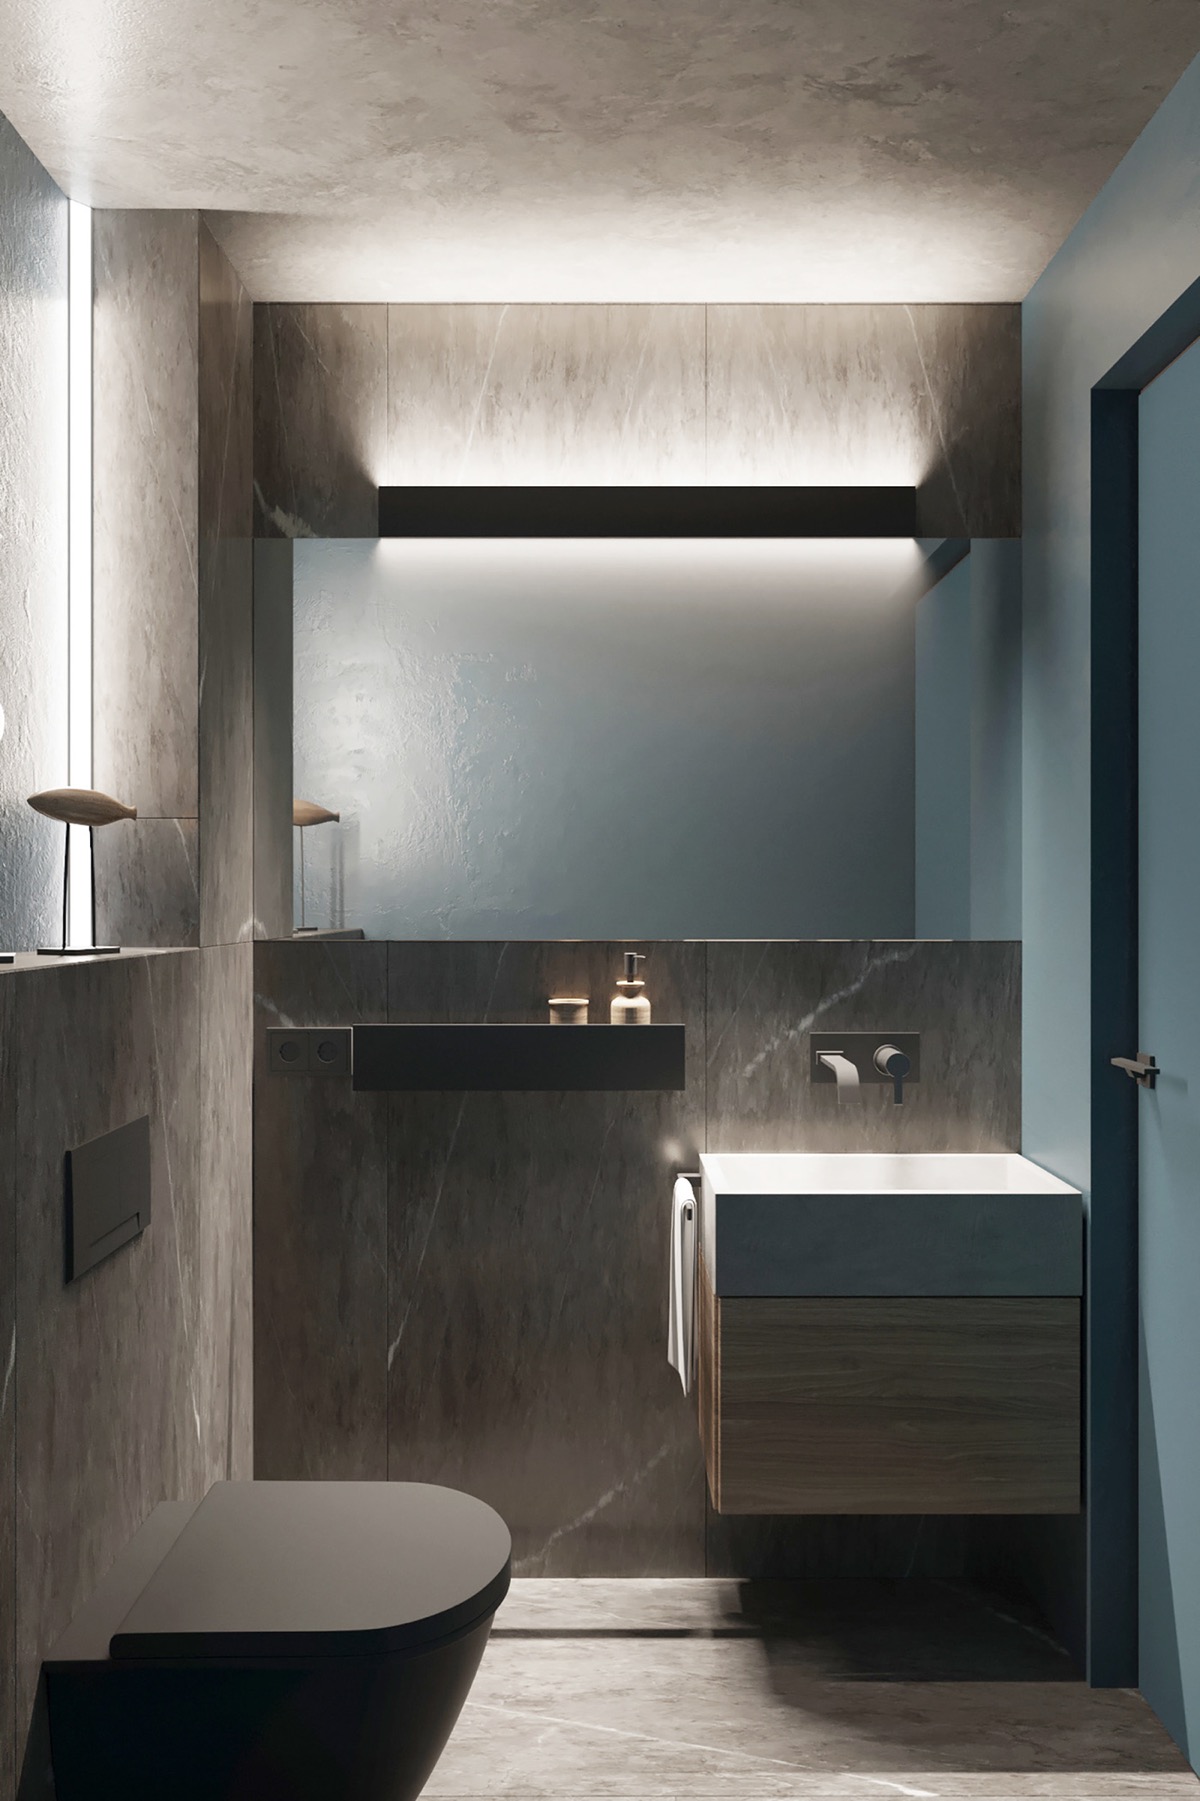 Nhà vệ sinh cũng được thiết kế nhỏ gọn và tiết kiệm diện tích. Phong cách tối giản được áp dụng triệt để trong không gian này.